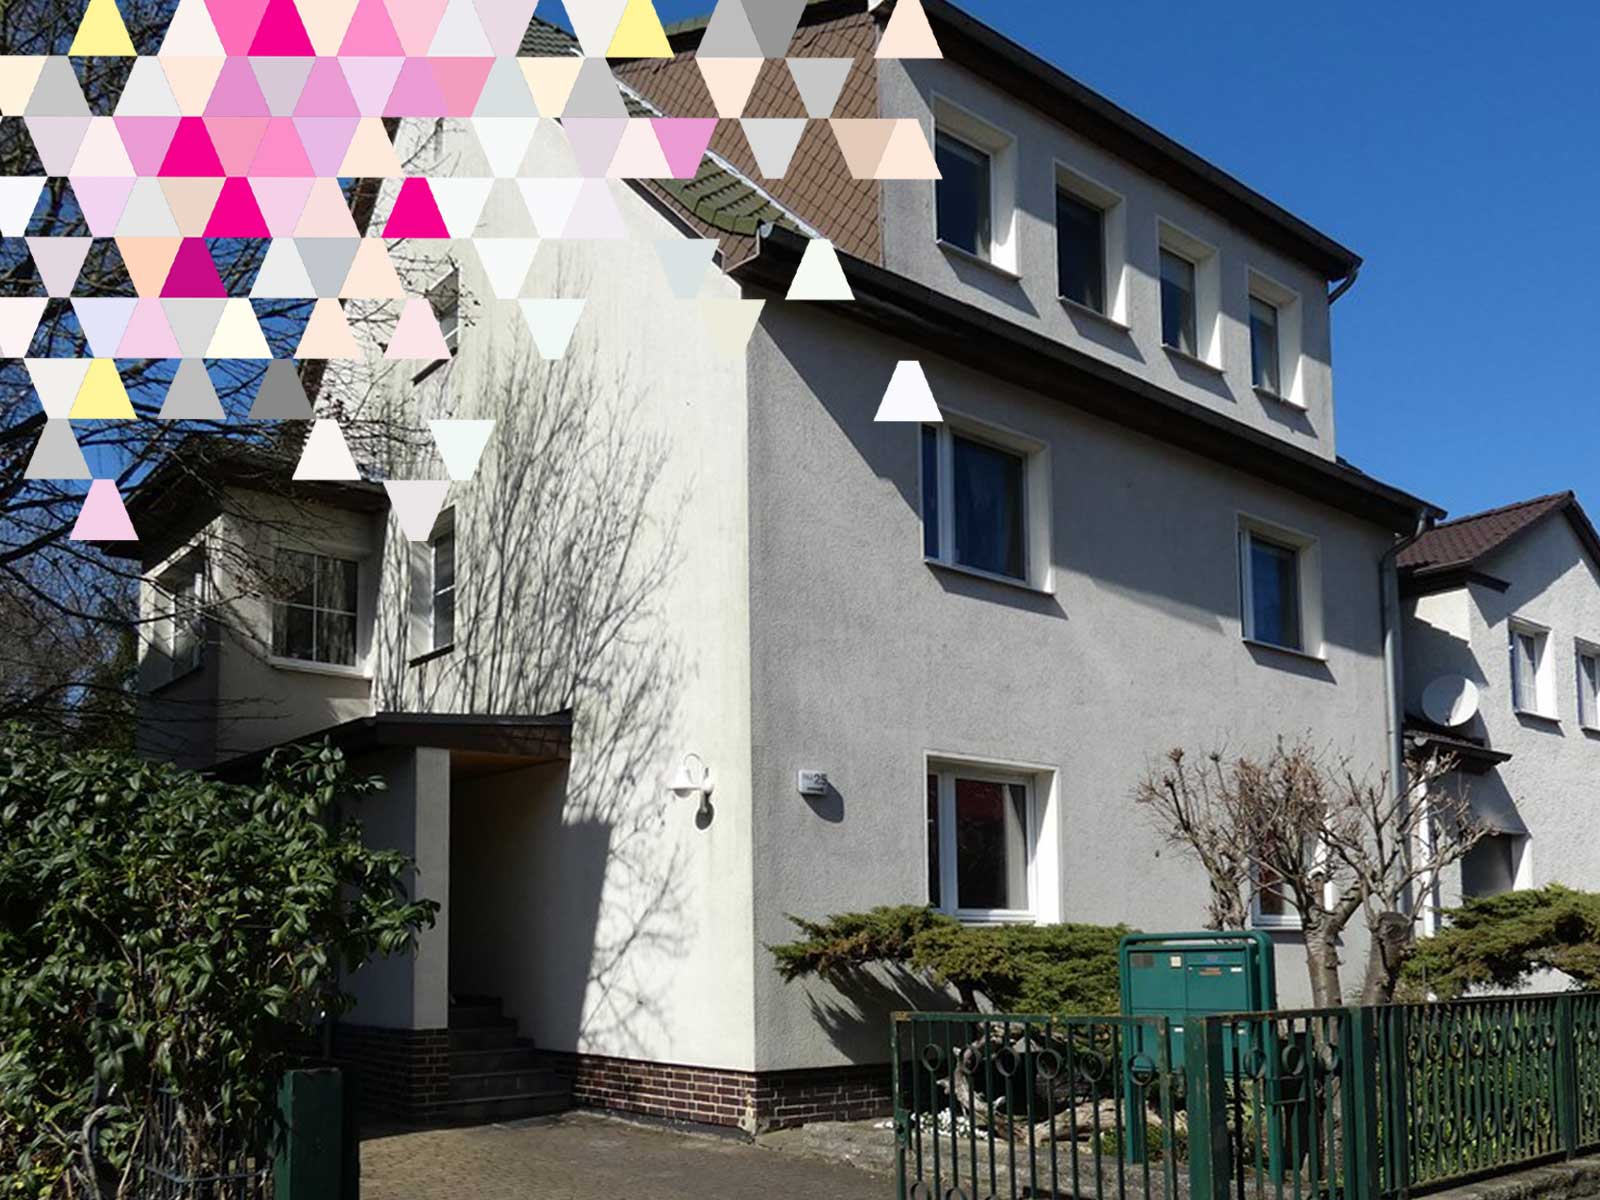 Referenz: Mehrfamilienhaus als Kapitalanlage in Berlin Alt-Hohenschönhausen